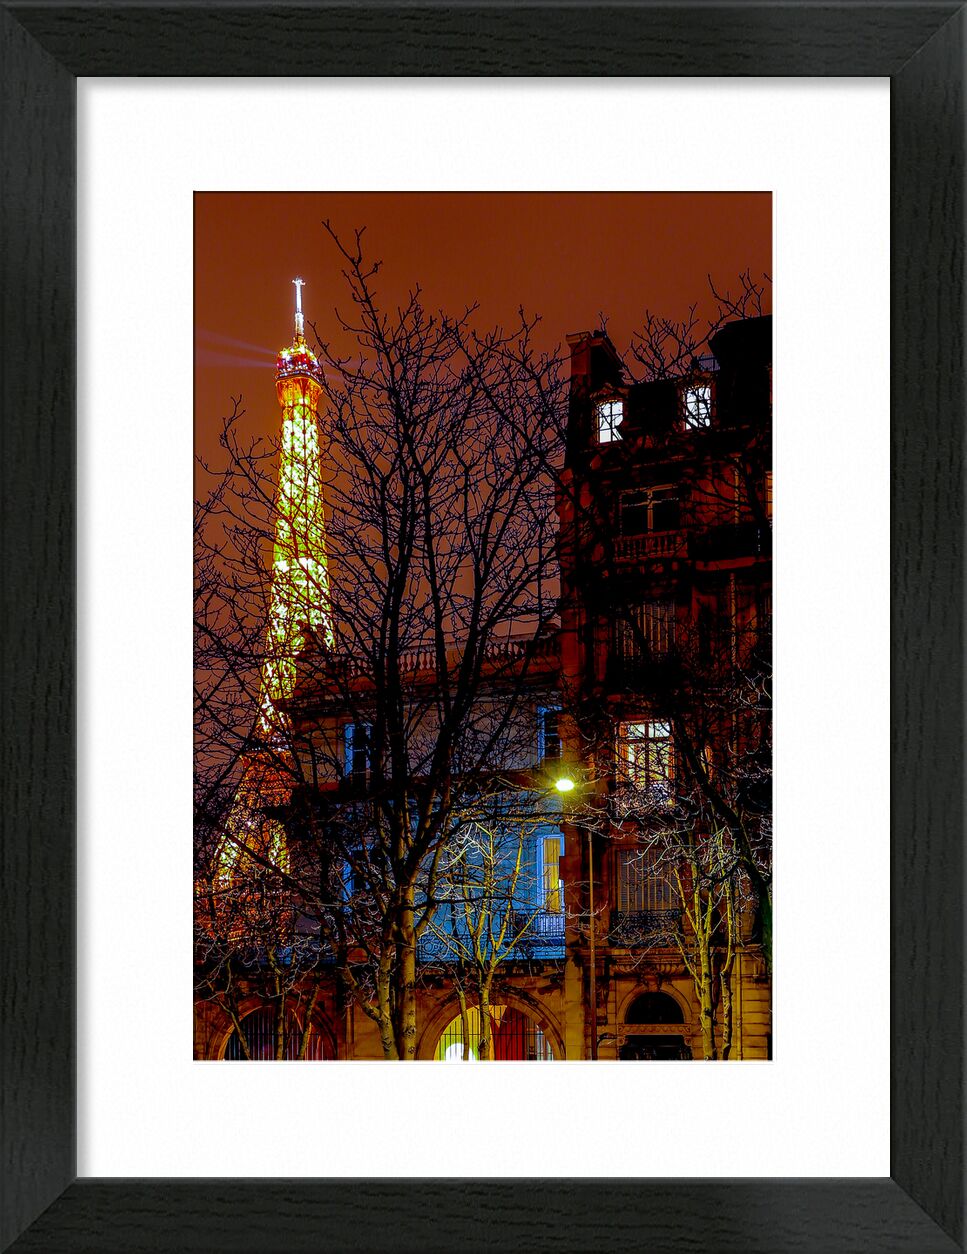 Tour Eiffel, Paris. de Octav Dragan, Prodi Art, lune, nuit, paris, turneiffel, France